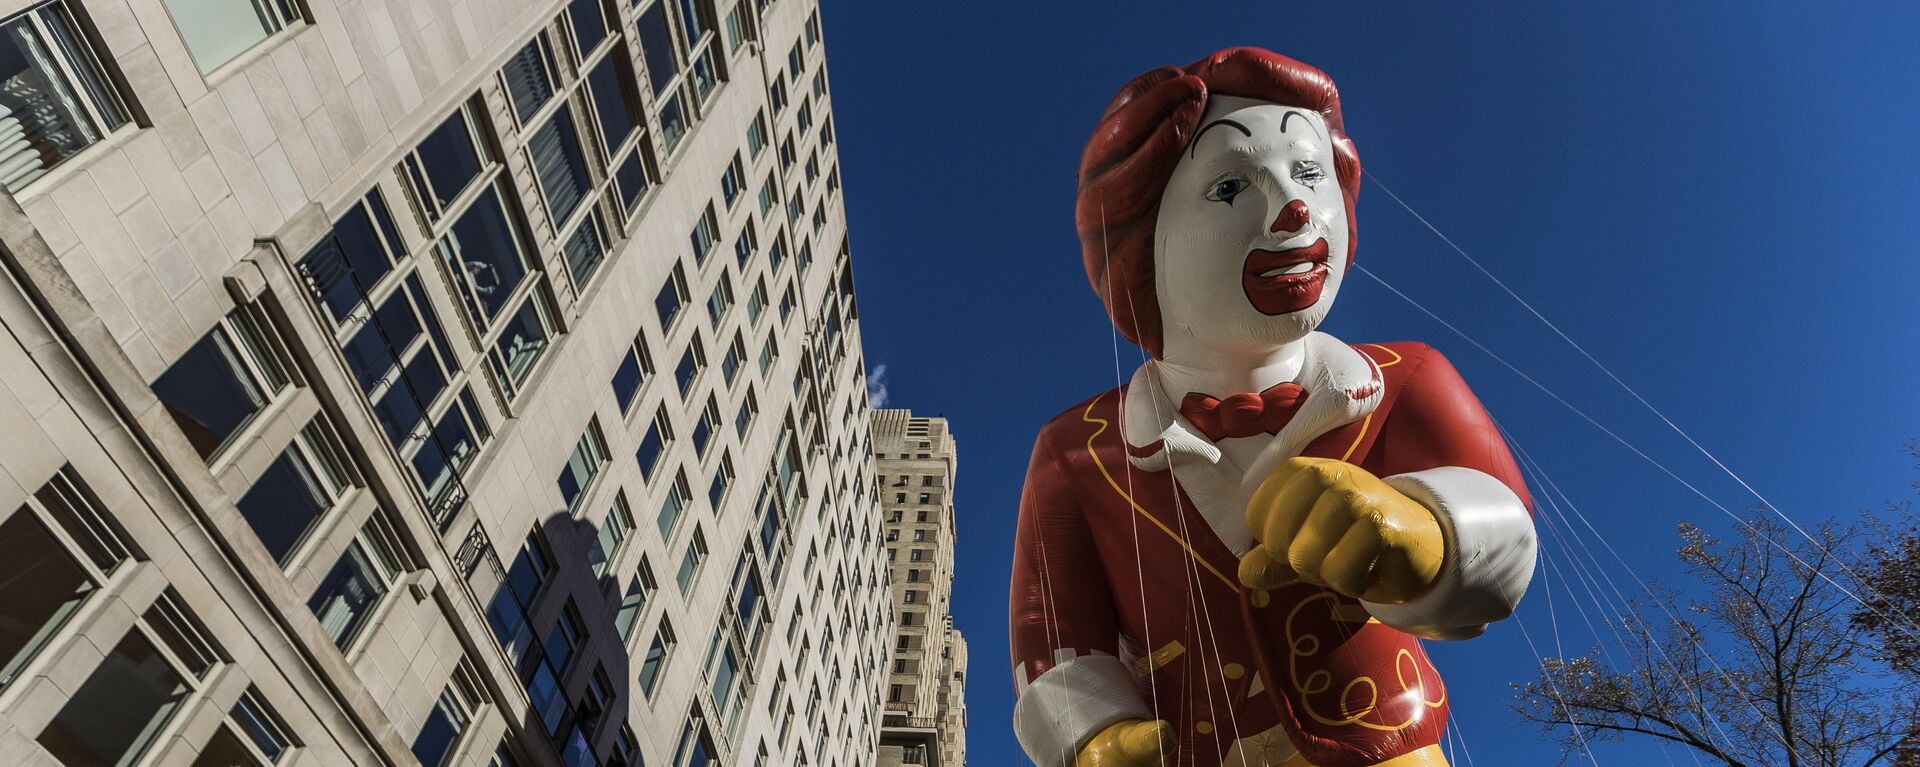 Символ сети McDonalds клоун Рональд Макдональд - Sputnik Латвия, 1920, 18.03.2022